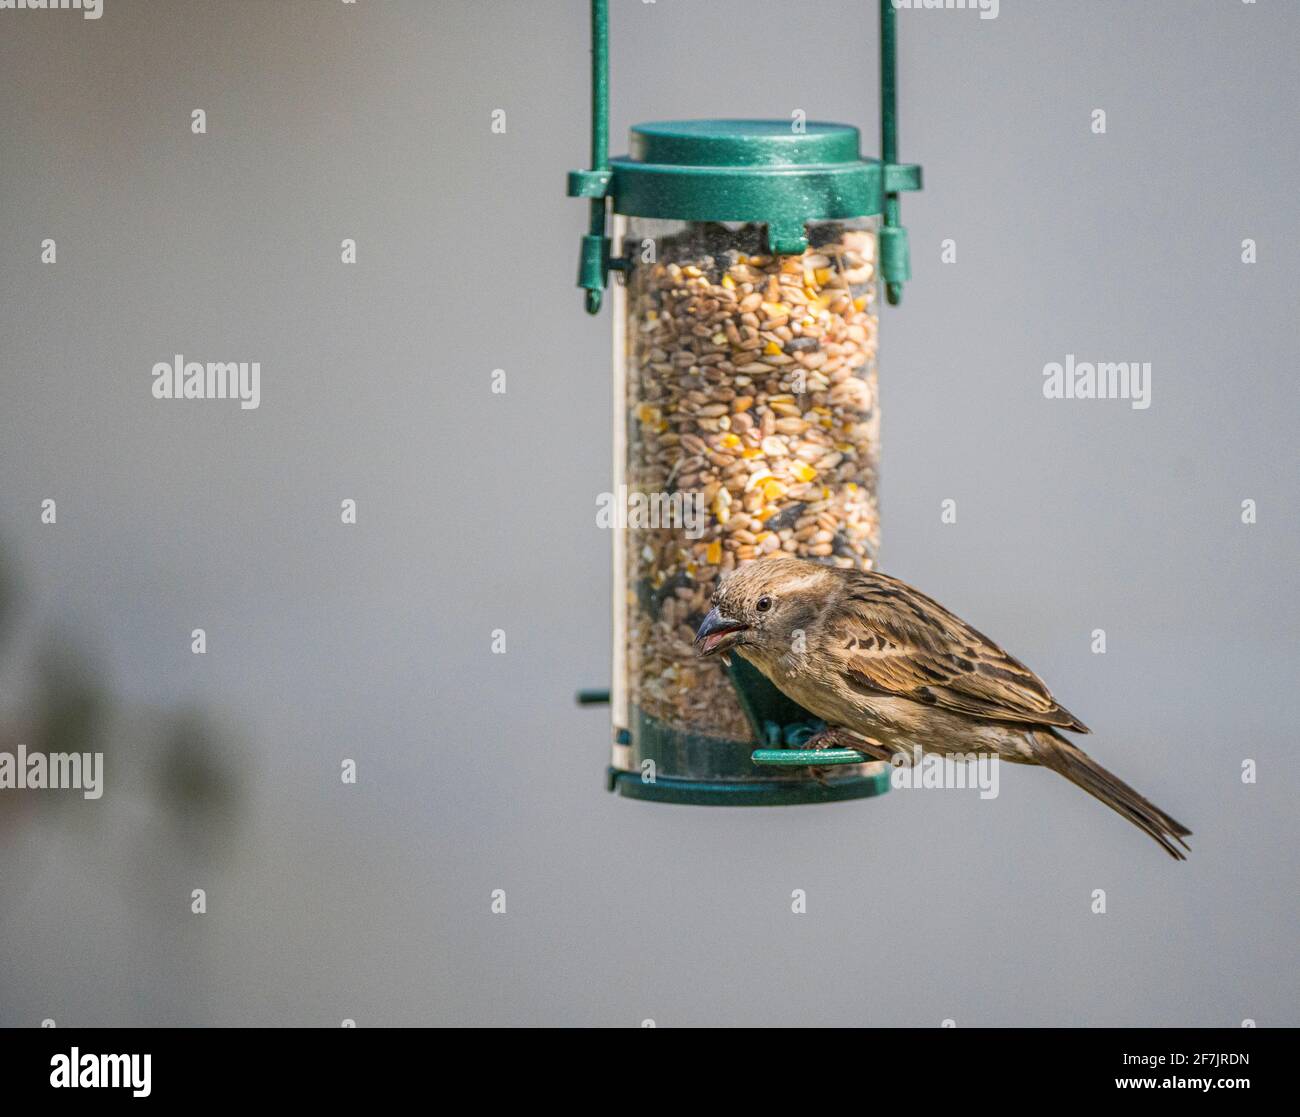 Ein weiblicher Haussparrow (Passer domesticus) Ein gewöhnlicher Gartenvögel in Großbritannien, der aufhängt und füttert Aus einem Vogelfutterhäuschen Stockfoto